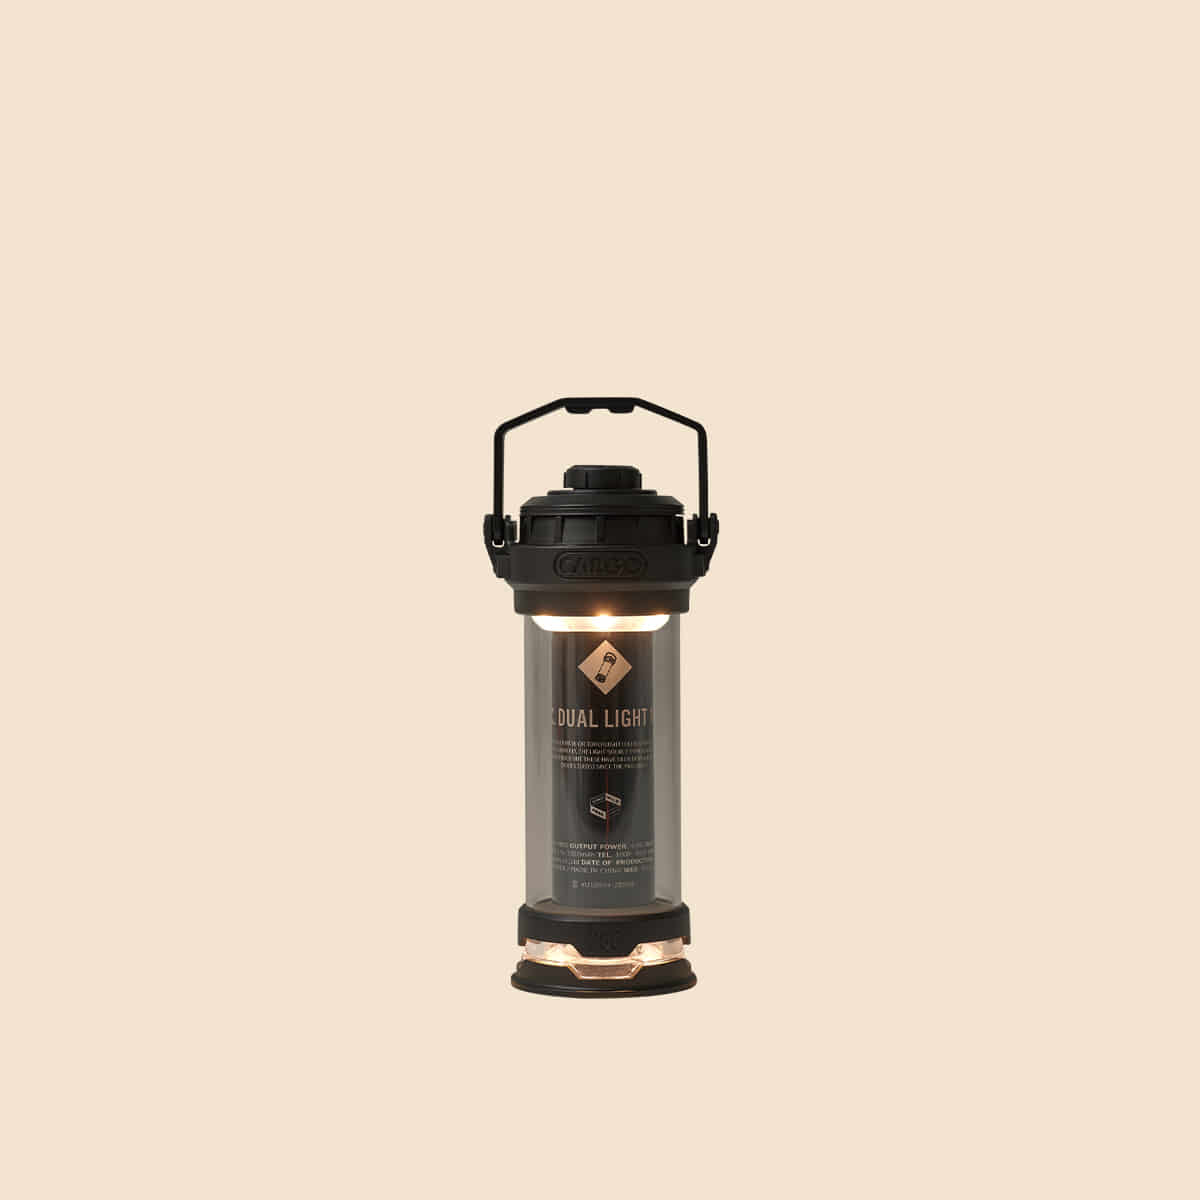 CARGO container Dual Light mini 工業風LED燈